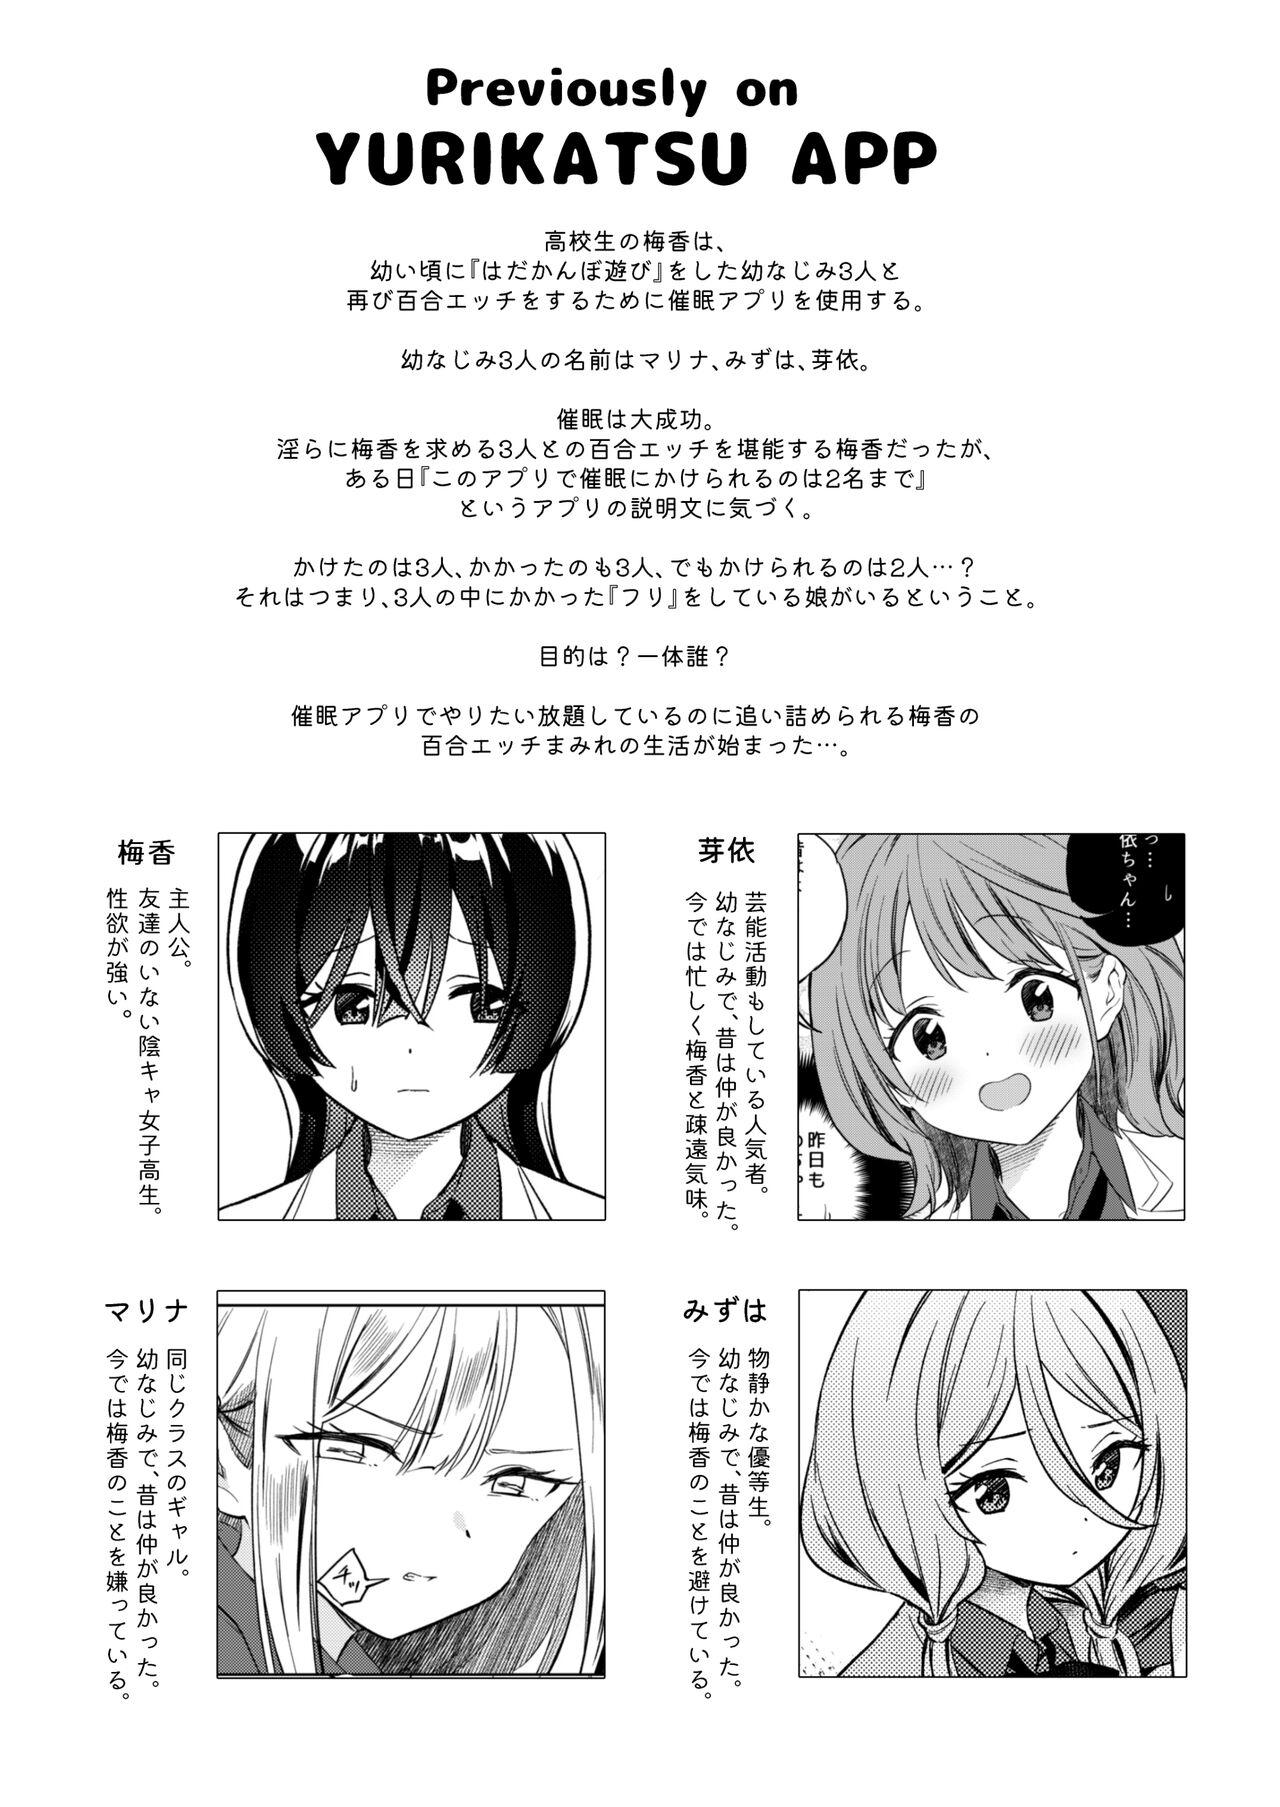 [Gutsutoma (Tachi)] Minna de Ecchi na Yurikatsu Appli ~Ee!? Kono Naka ni Kakattenai Musume ga Iru!?~2 3